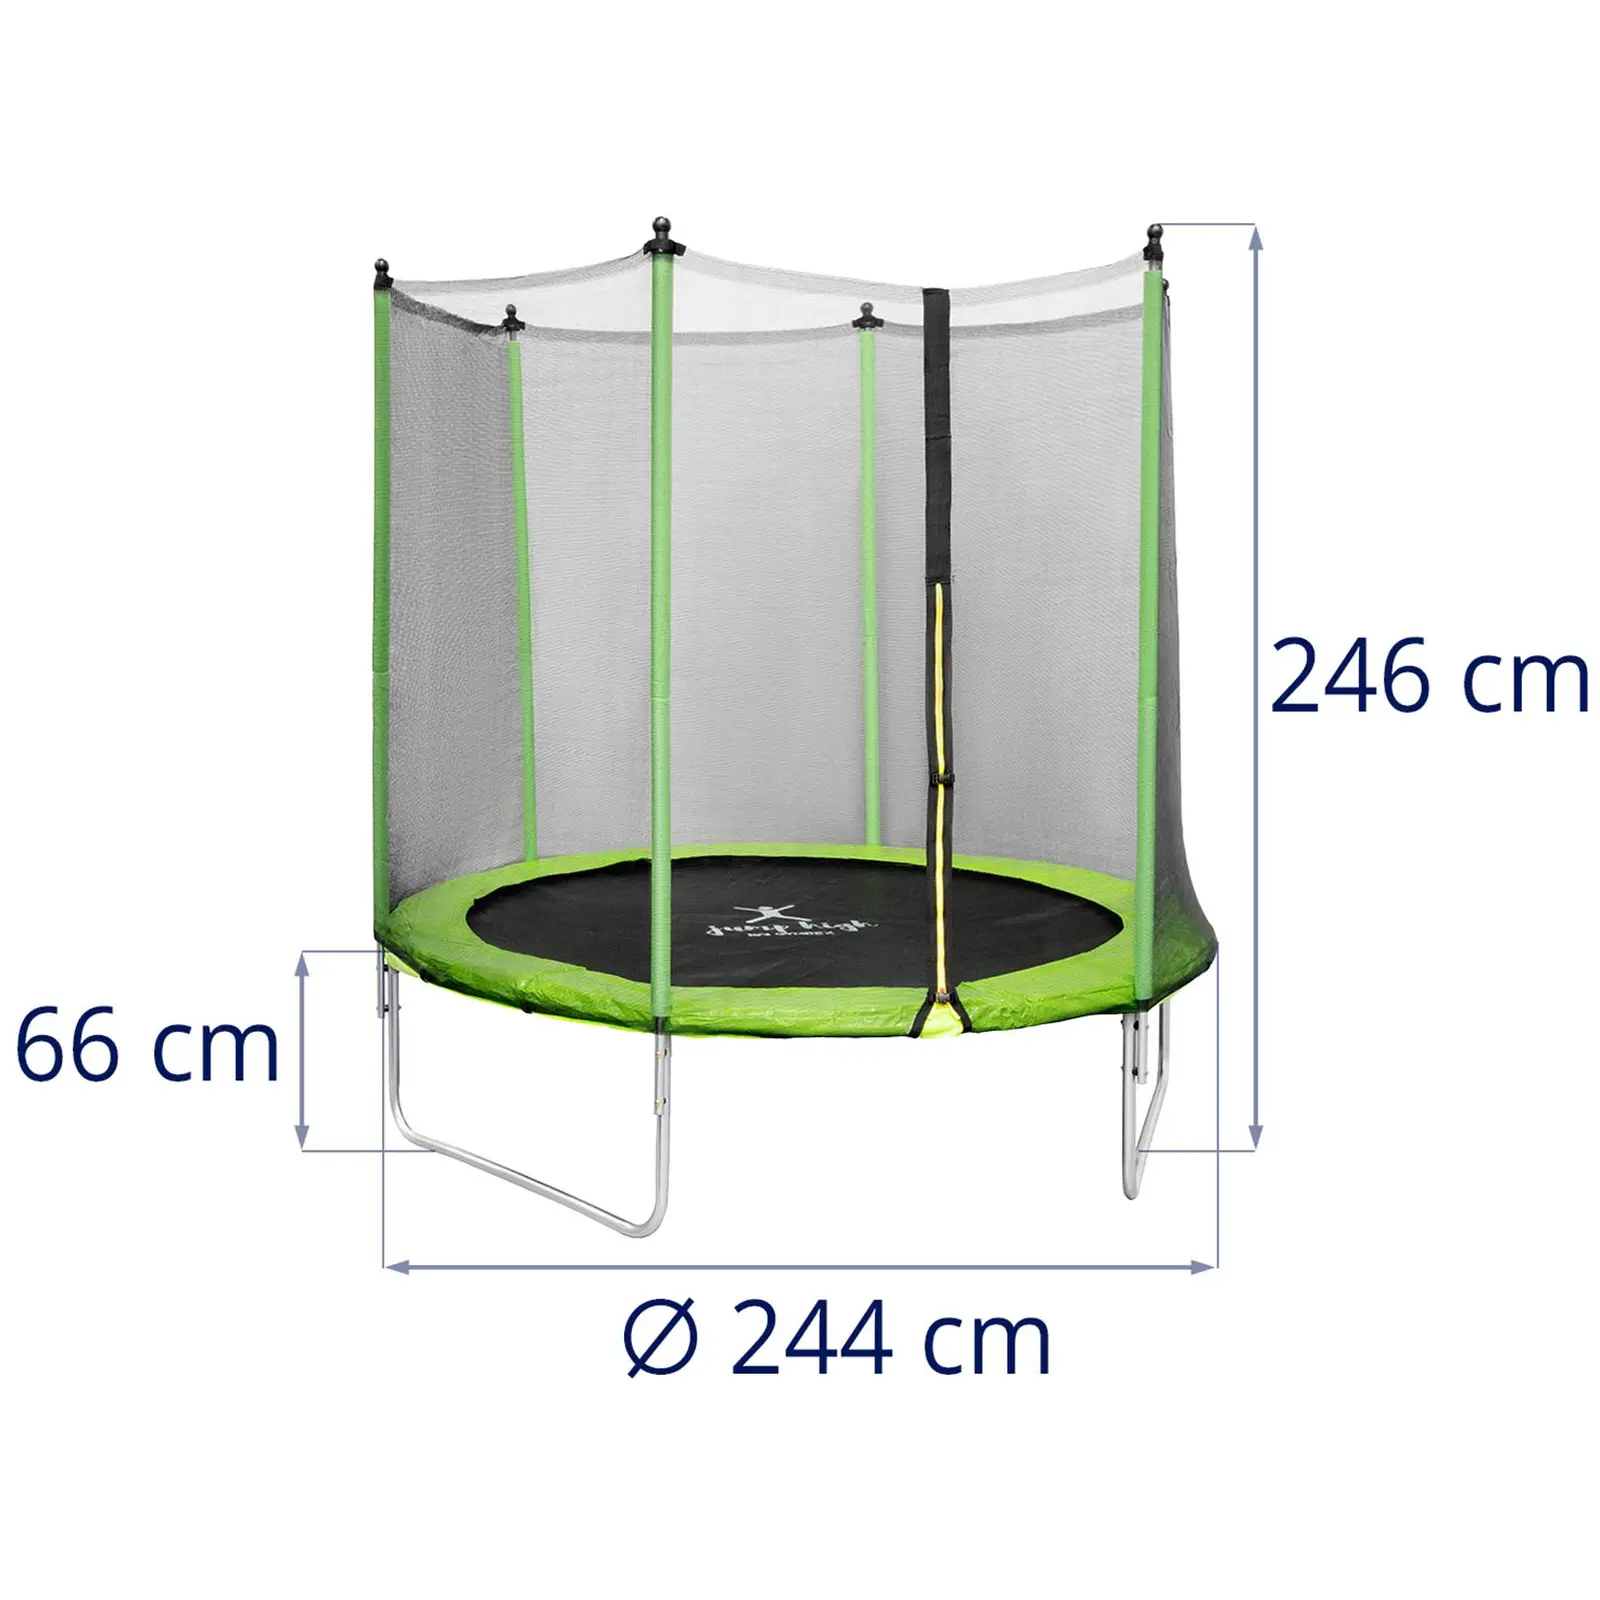 Trampolin med net - 244 cm i diameter - 80 kg - sort/grøn